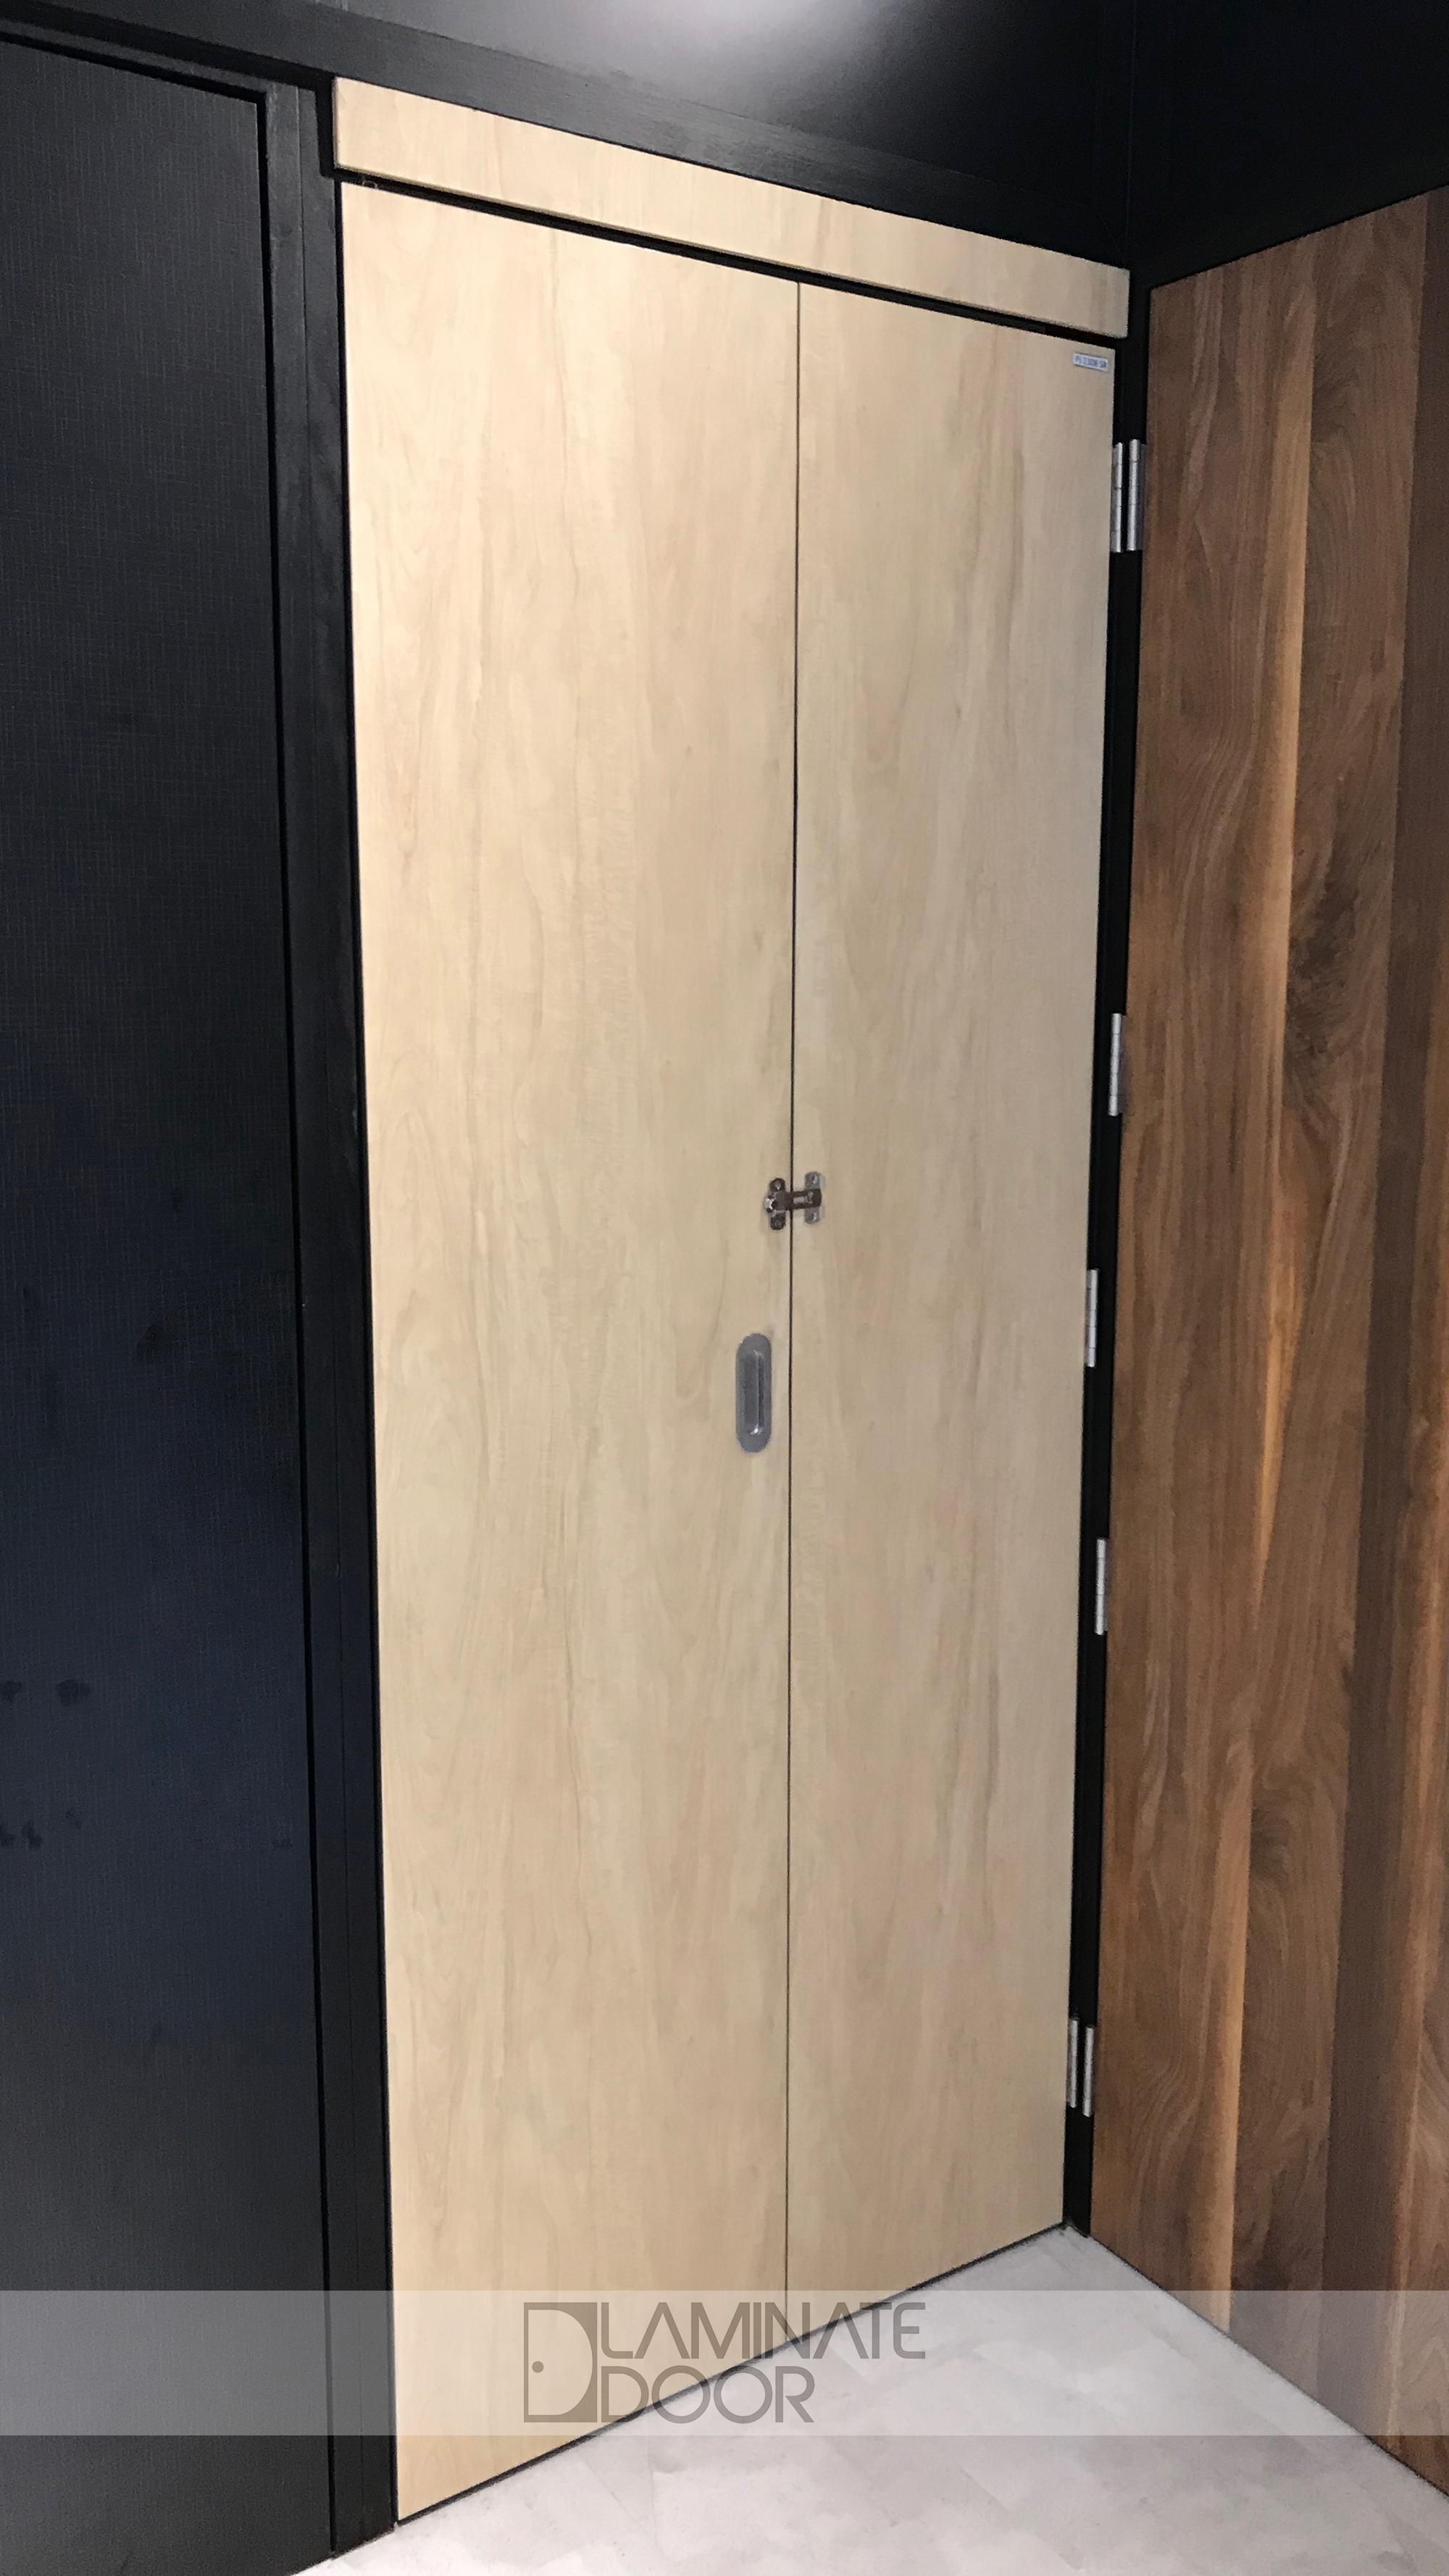 Solid Wooden Laminate Bi-fold Door